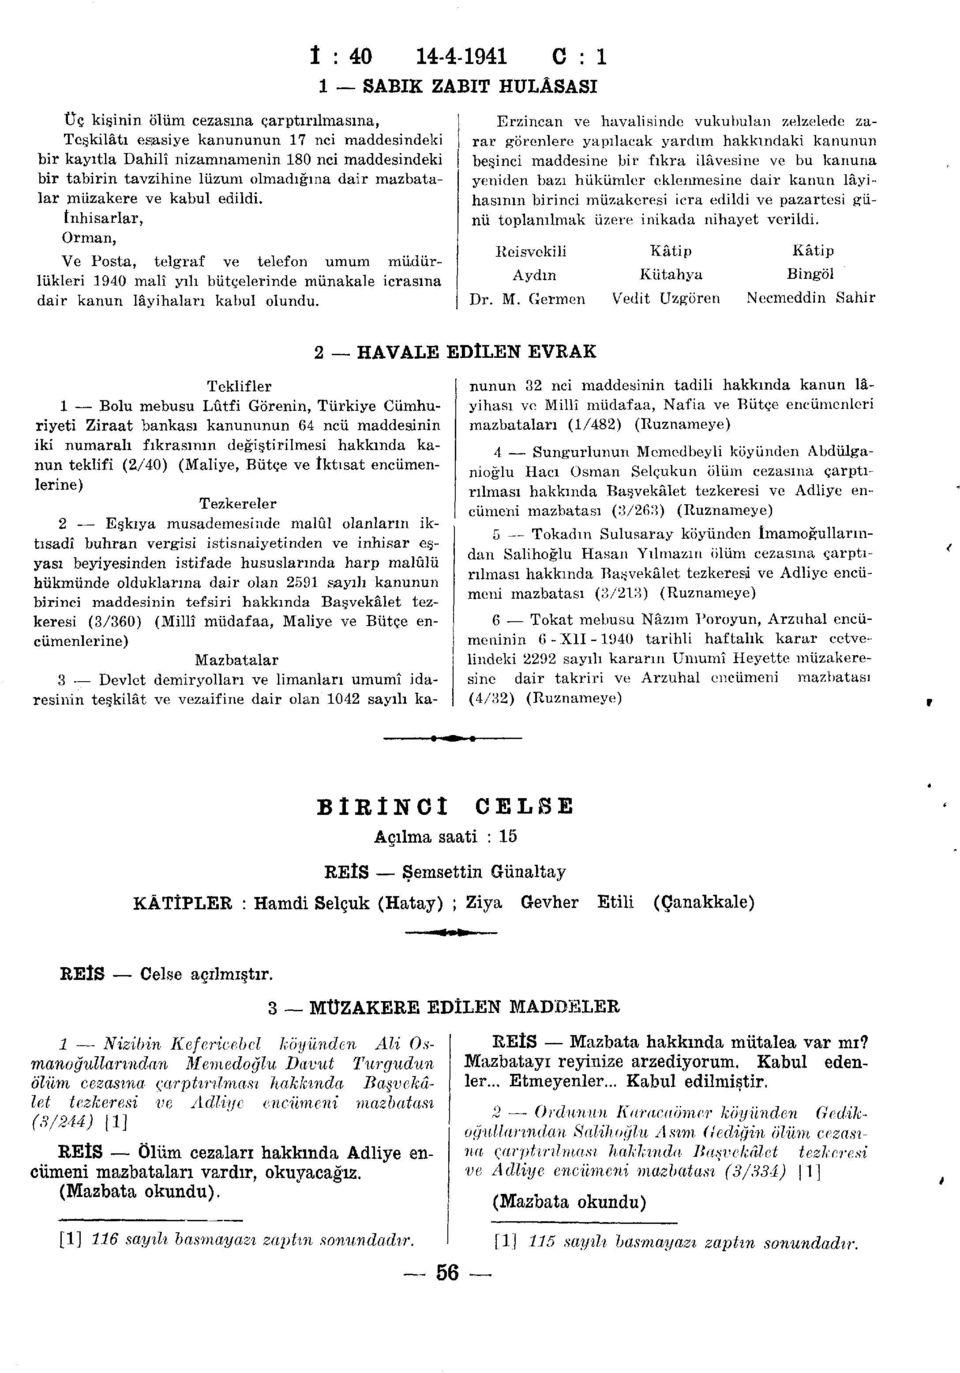 İnhisarlar, Orman, Ve Posta, telgraf ve telefon umum müdürlükleri 1940 malî yılı bütçelerinde münakale icrasına dair kanun lâyihaları kabul olundu.